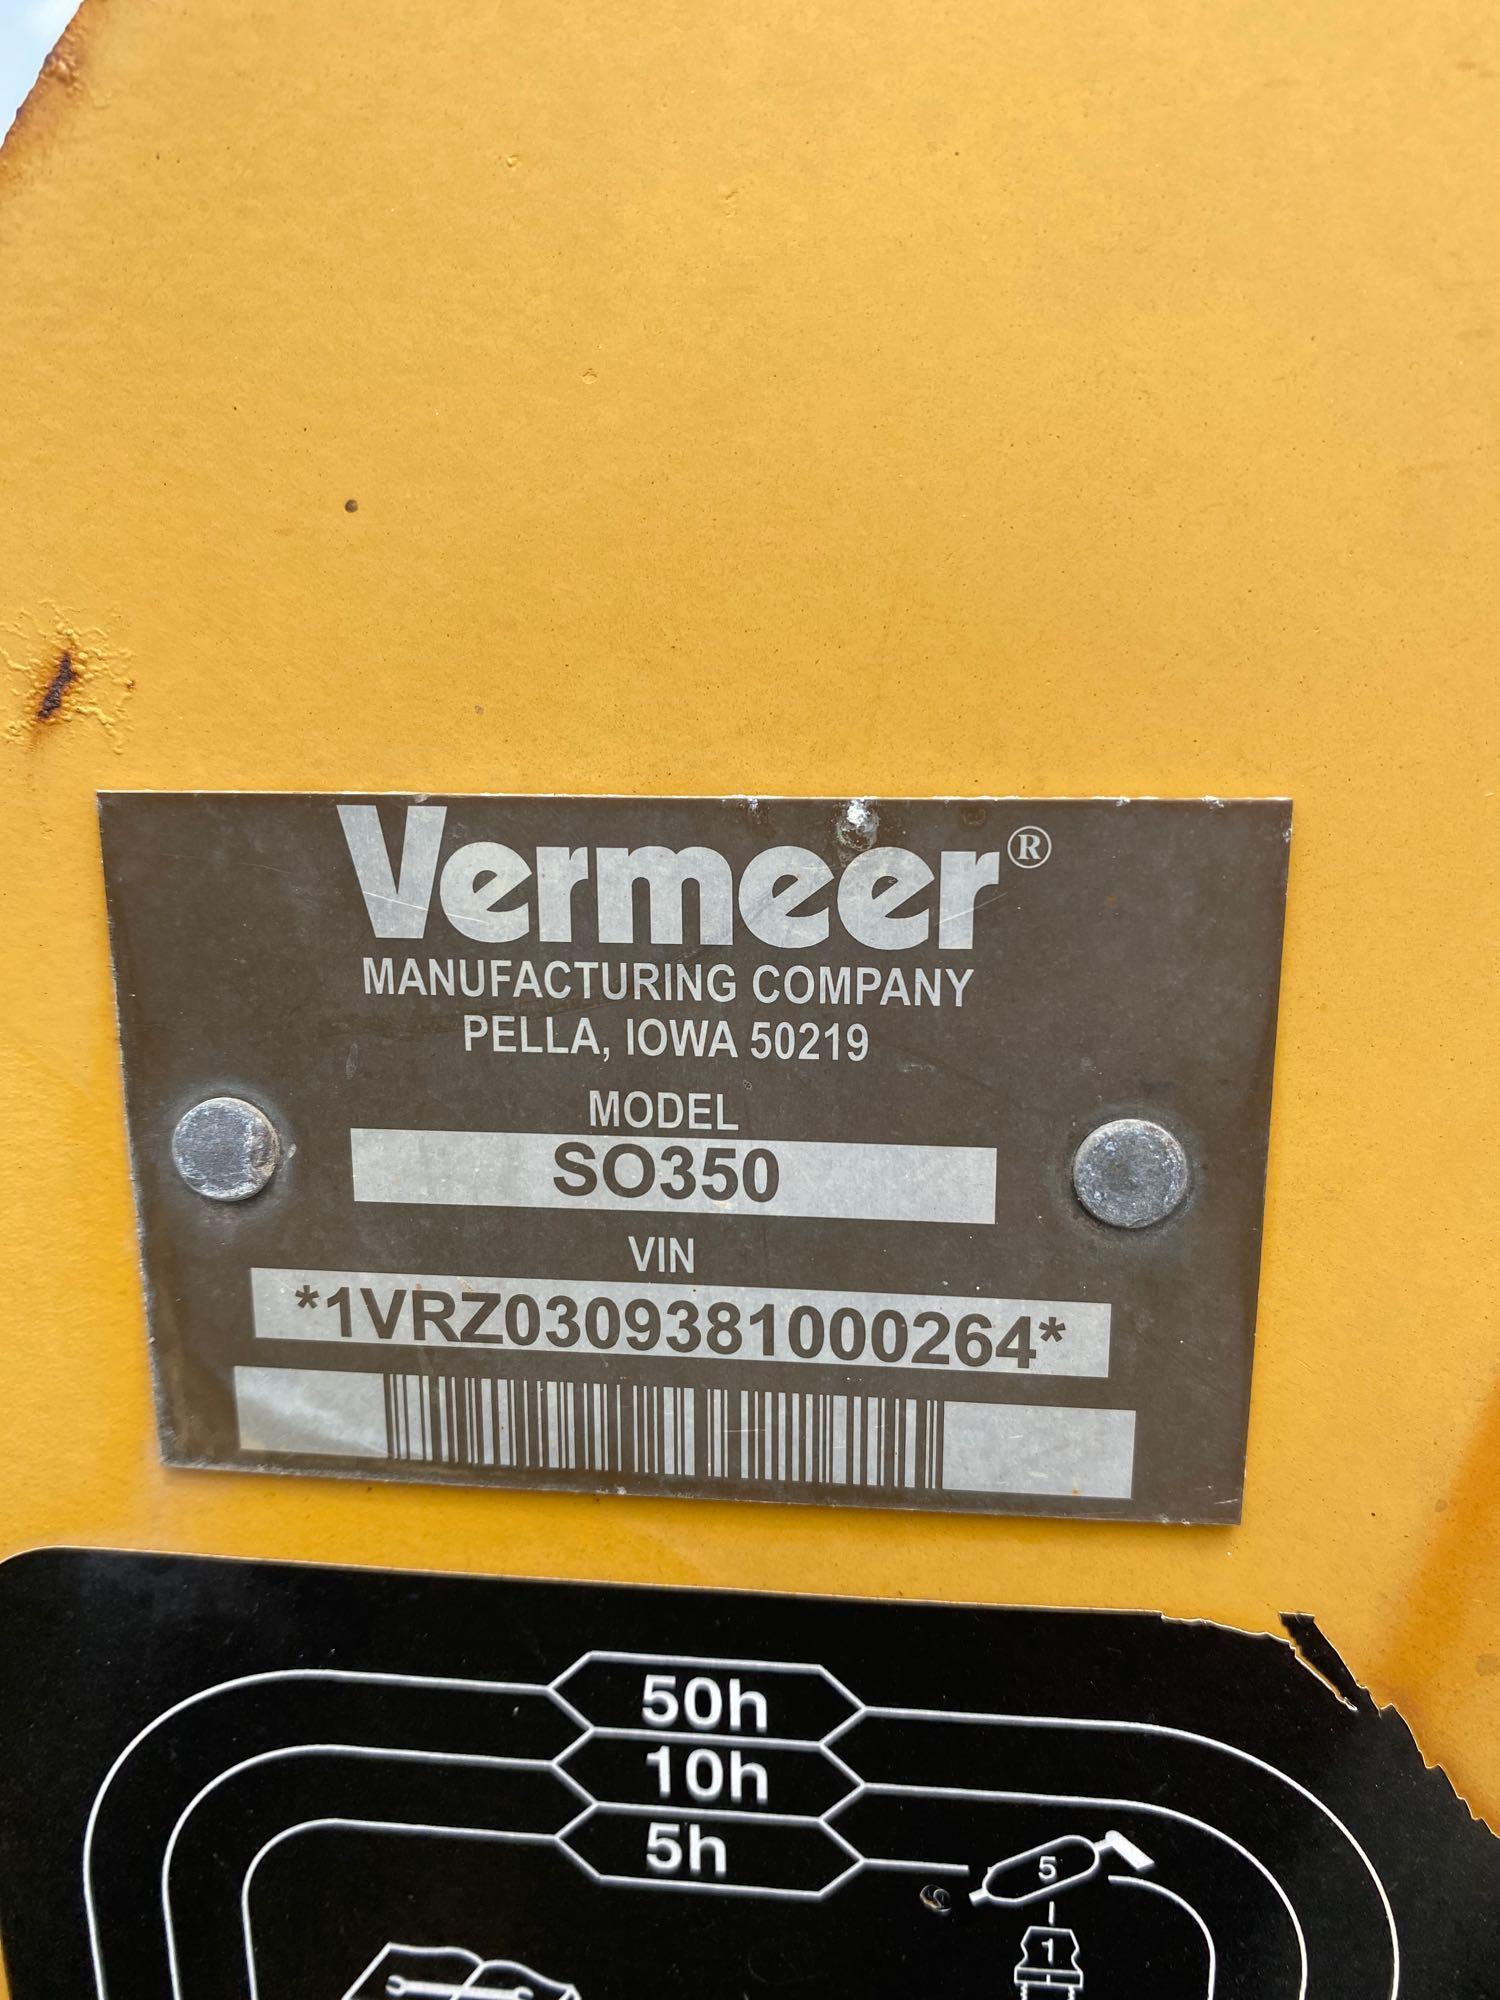 2008 Vermeer RT350 Trencher